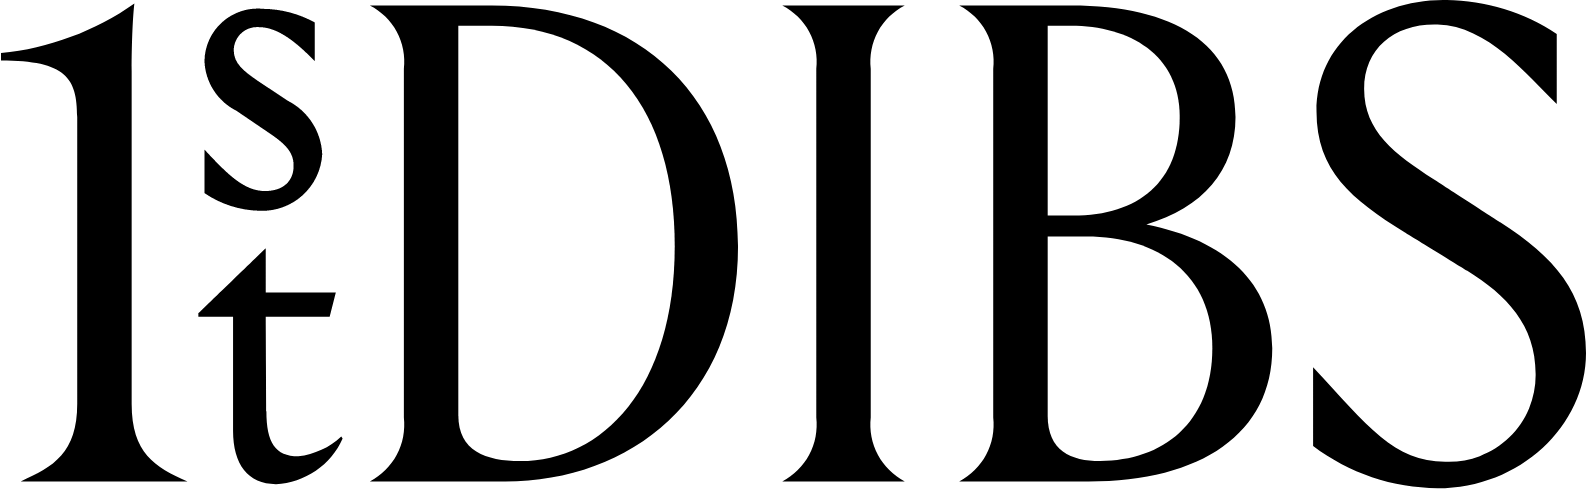 1stdibs.Com logo large (transparent PNG)